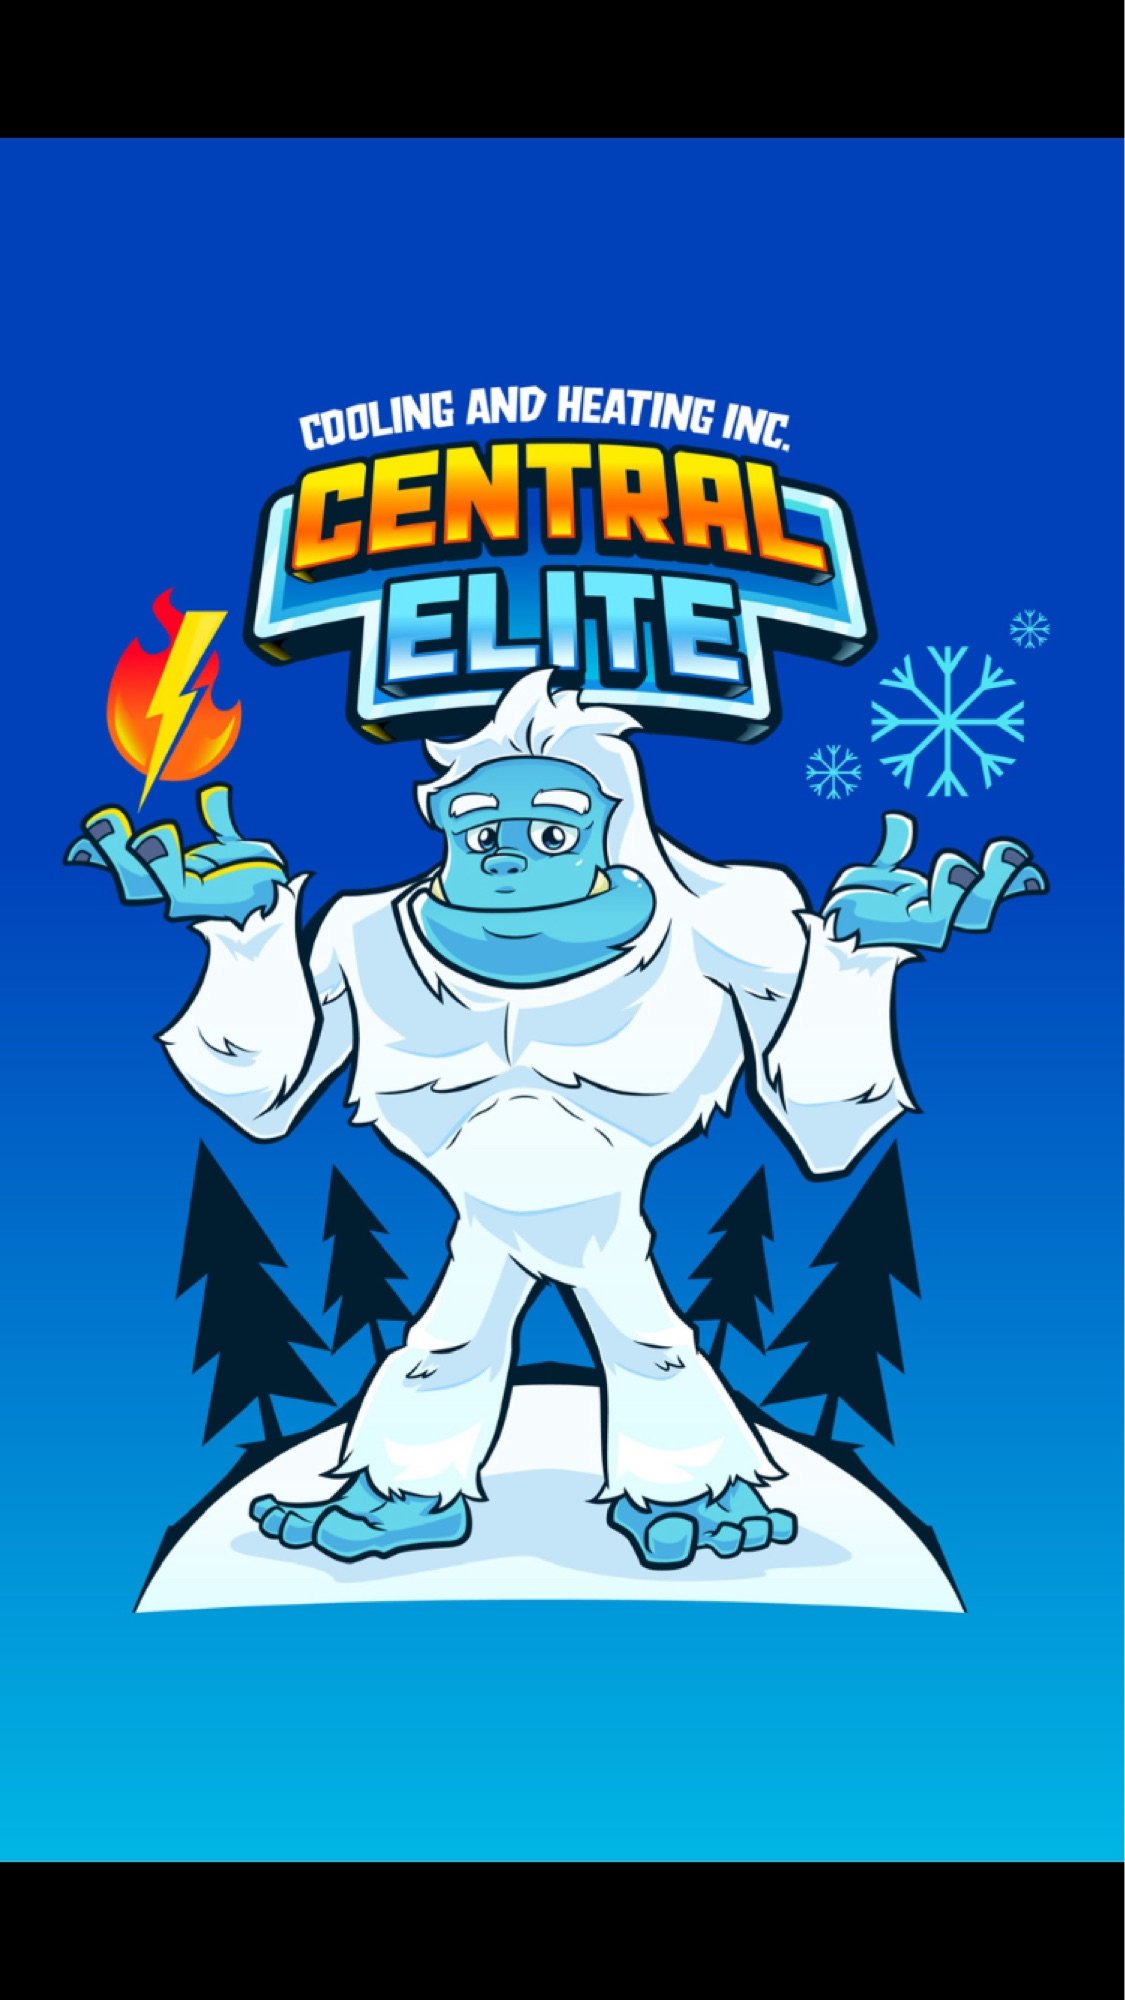 Central Elite Cooling & Heating Inc Logo